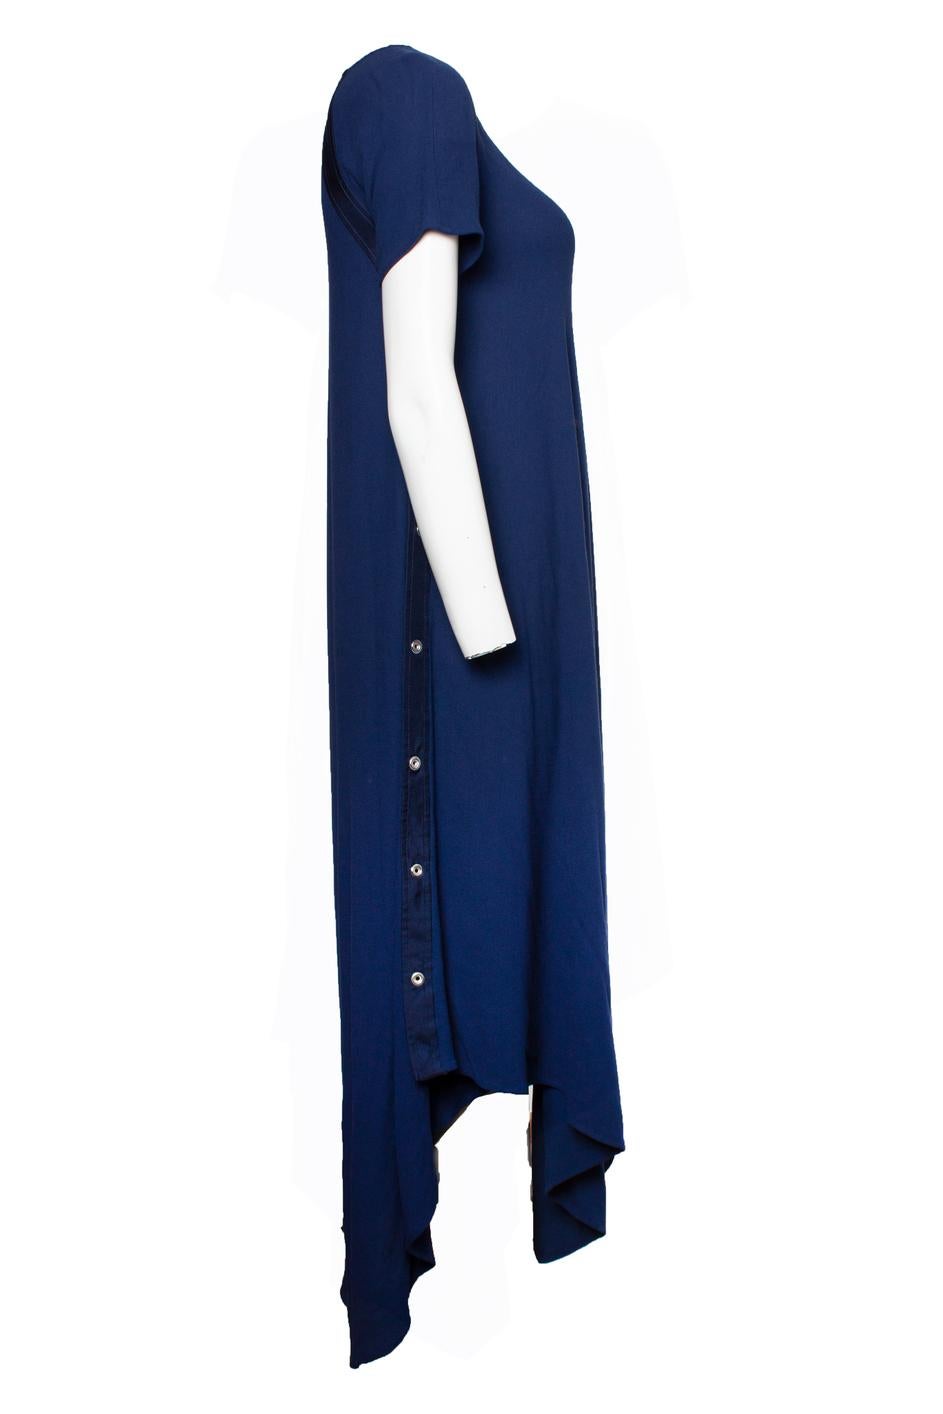 Noir Sies Marjan, Robe asymétrique bleue en vente